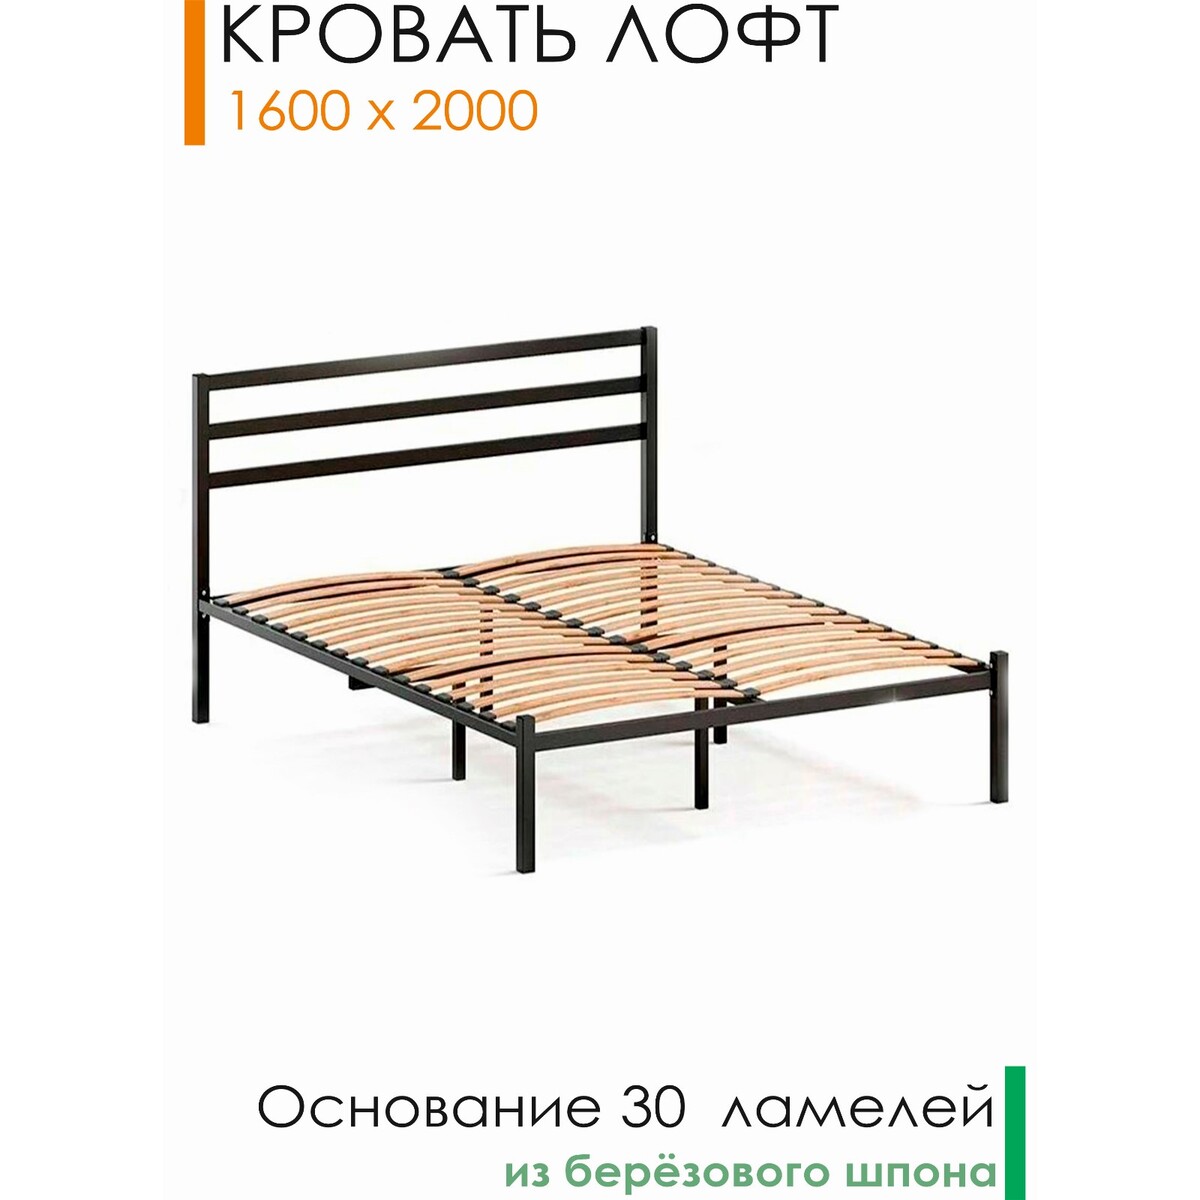 Кровать лофт 2000*1600, двуспальная, разборная, металлическая ортопедическое основание для спального места 1600 × 2000 мм